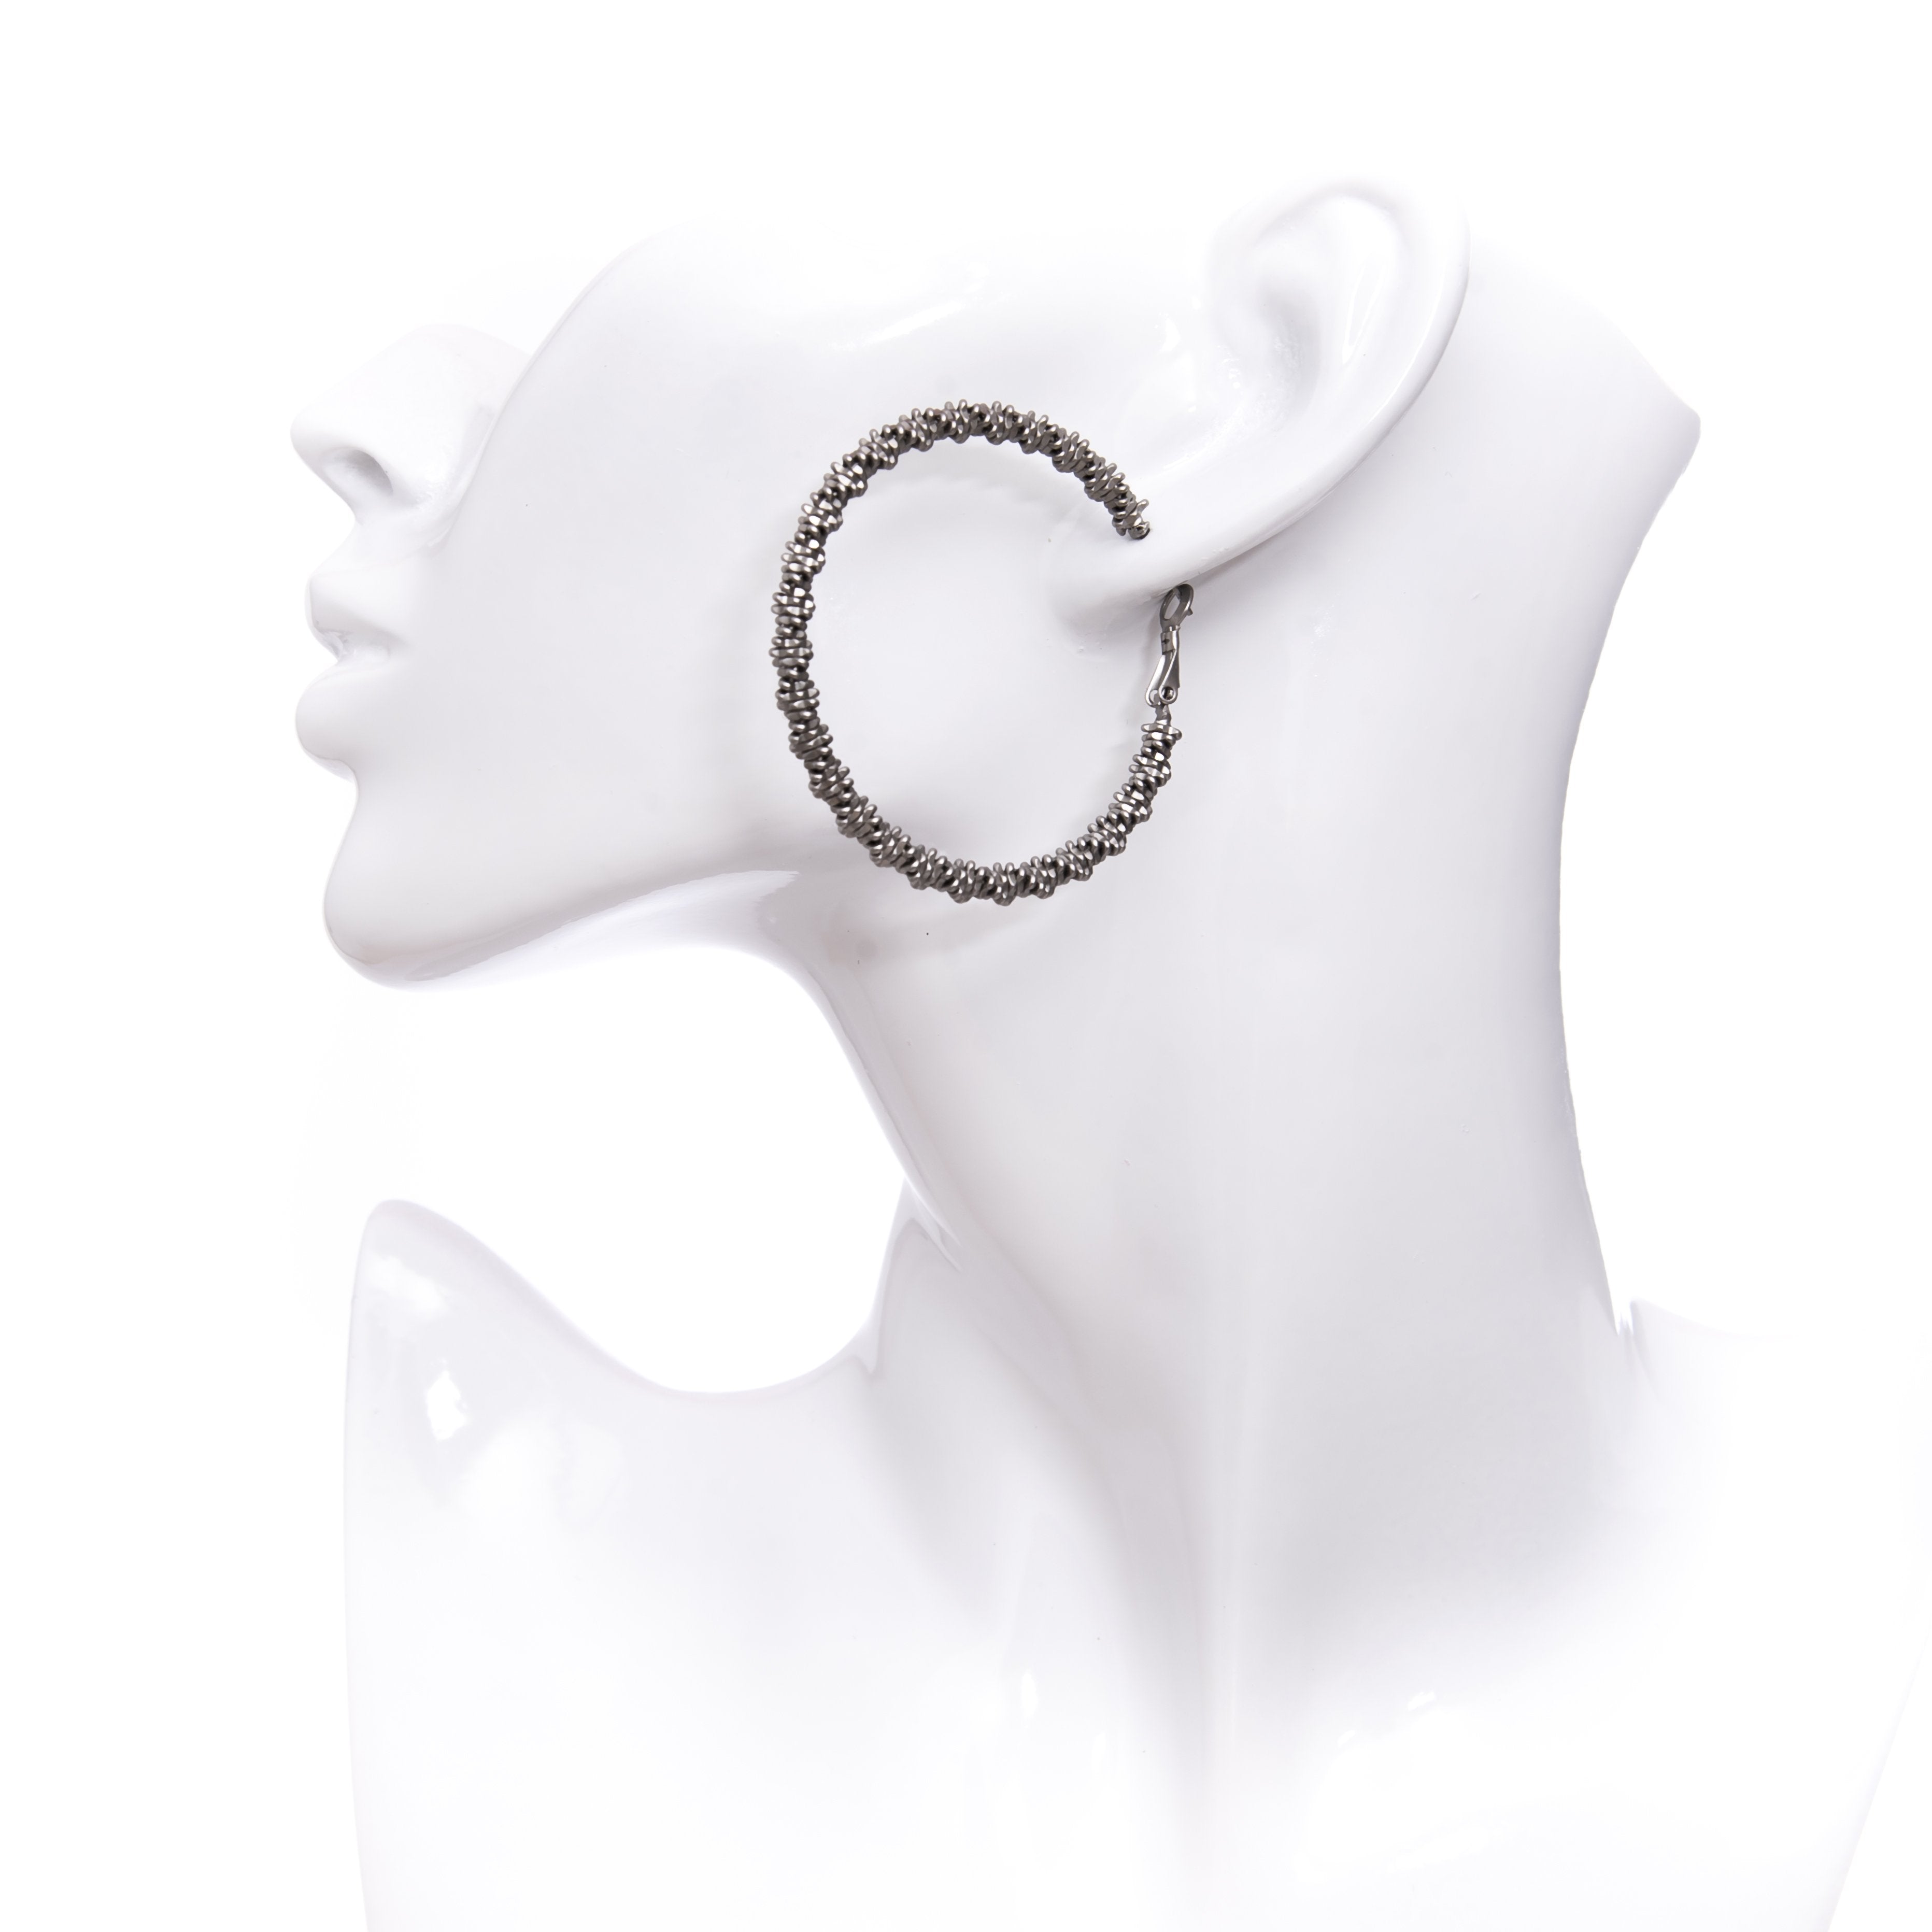 Silver Horseshoe Oval Wire Earrings Arc Open Hoop Earrings -  Norway